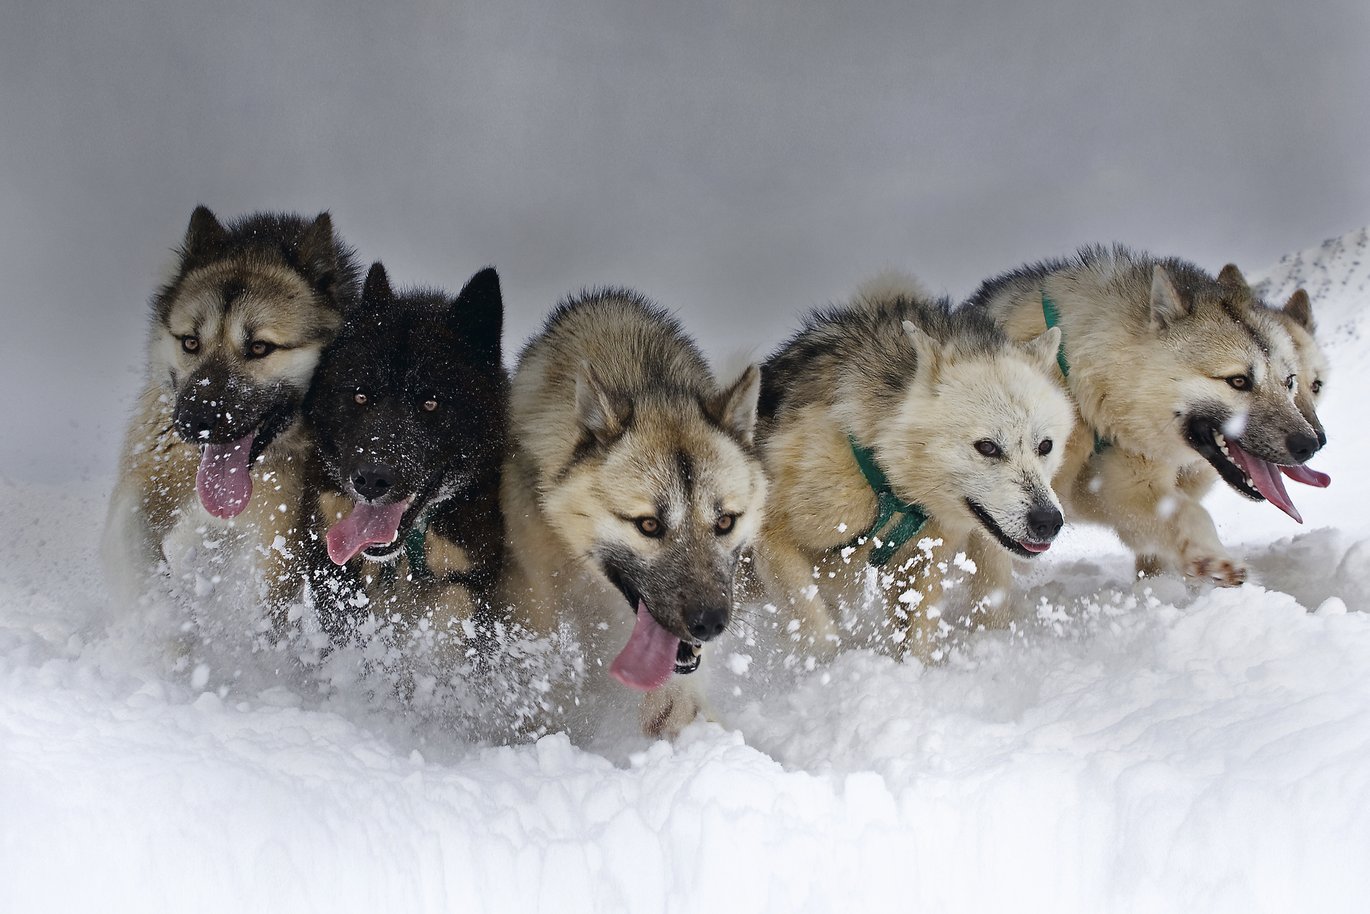 Seks slædehunde, som trækker en slæde, løber gennem sneen.